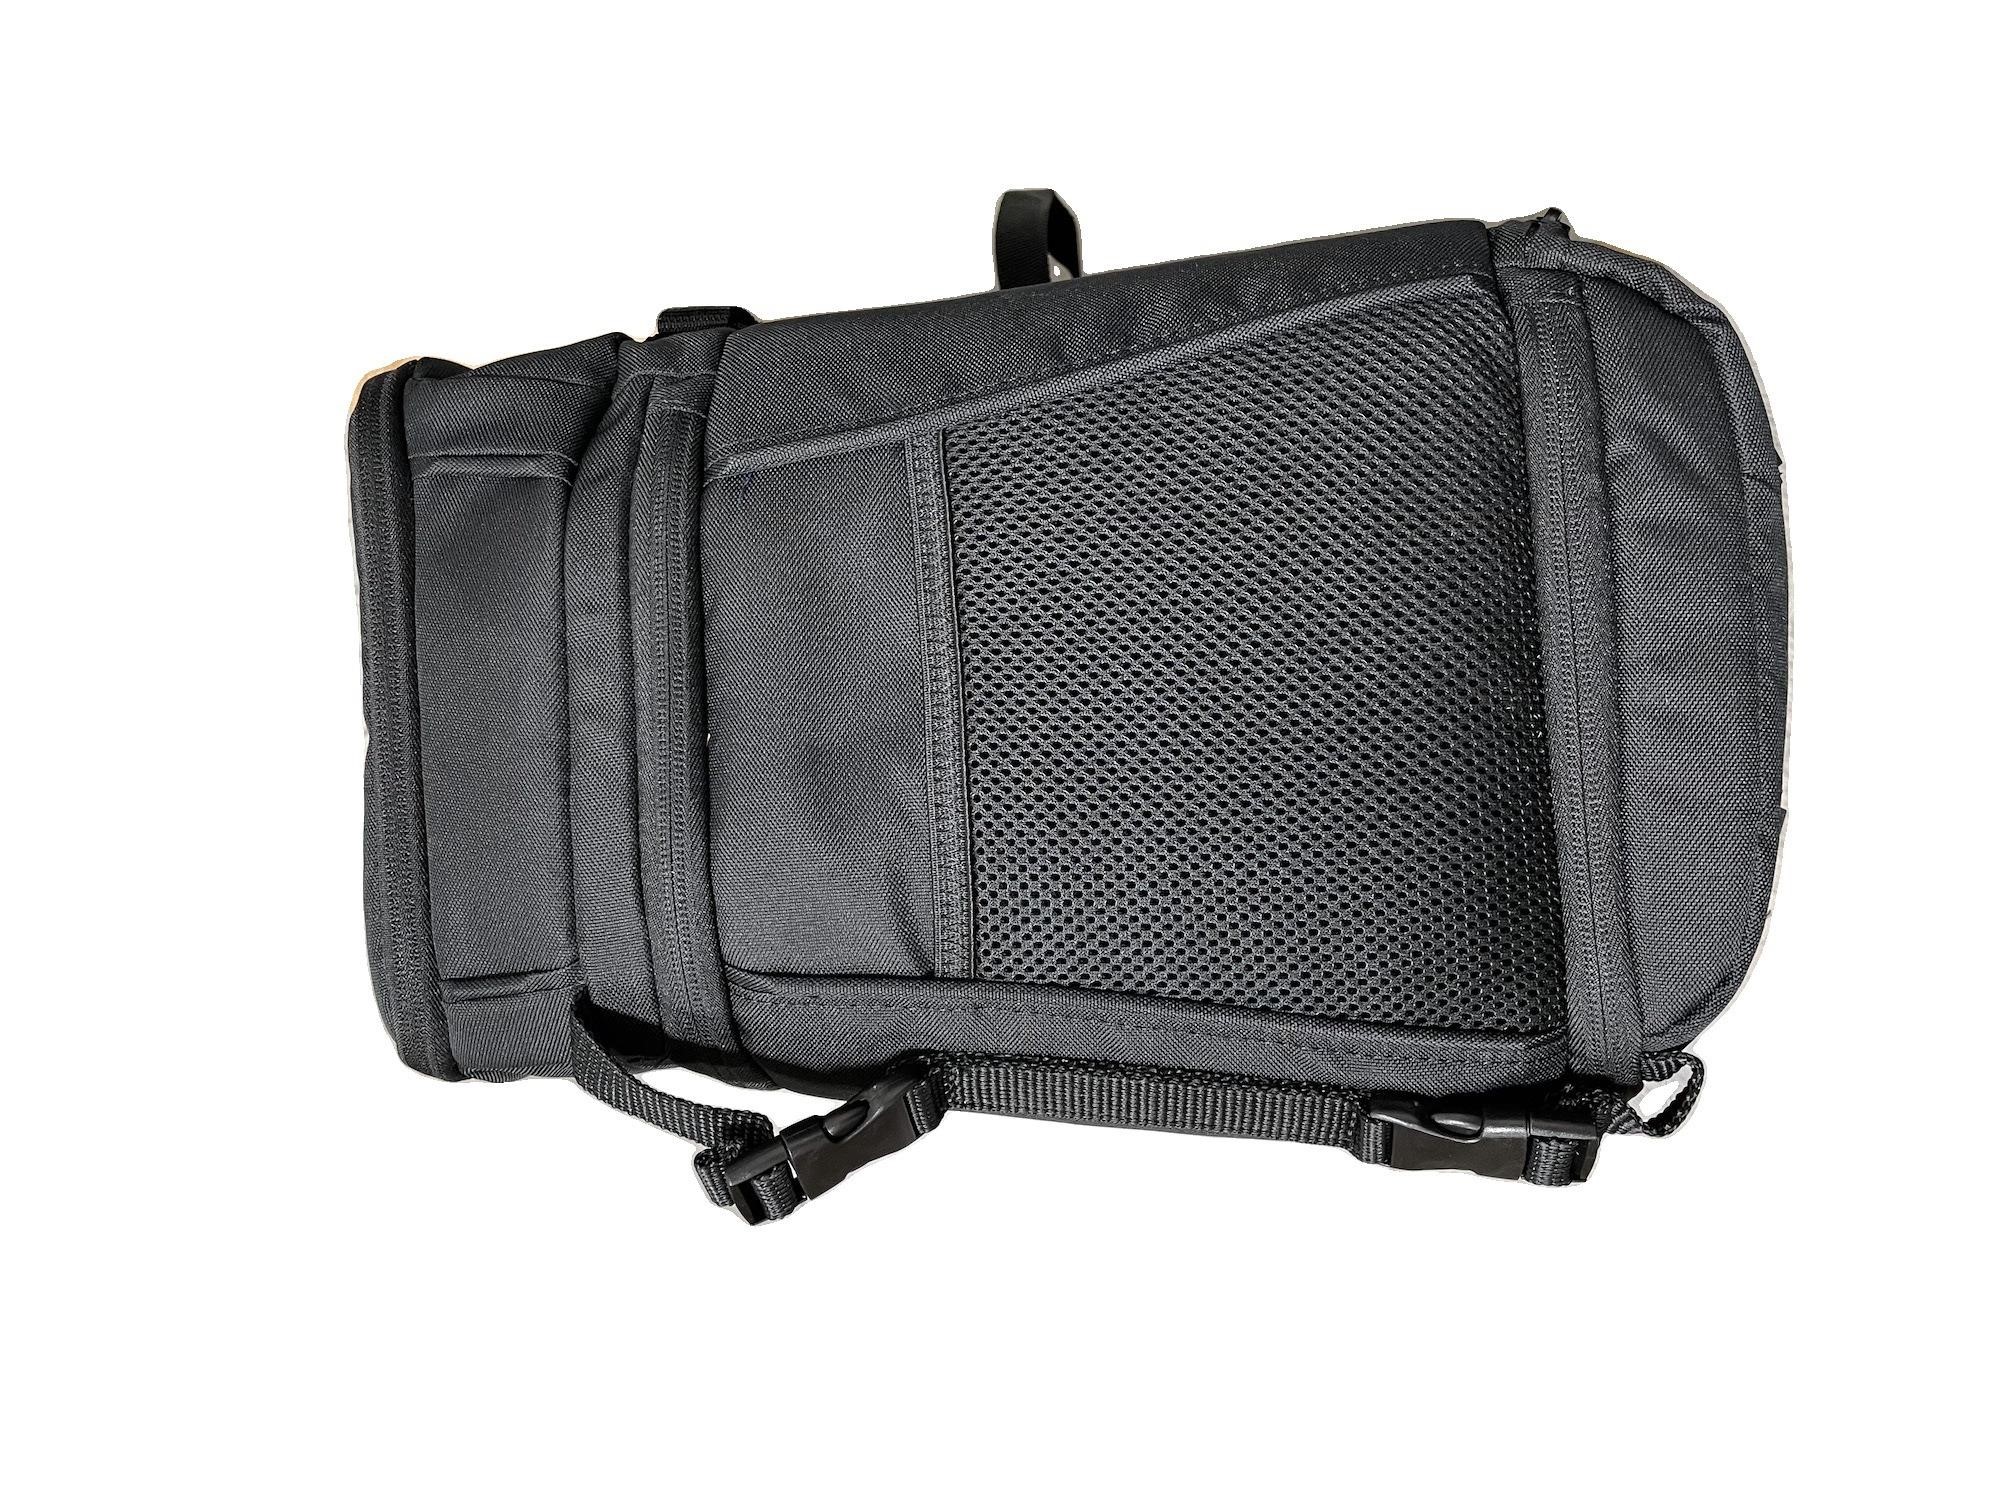 Amazonbasics Black Sling Backpack for SLR Cameras